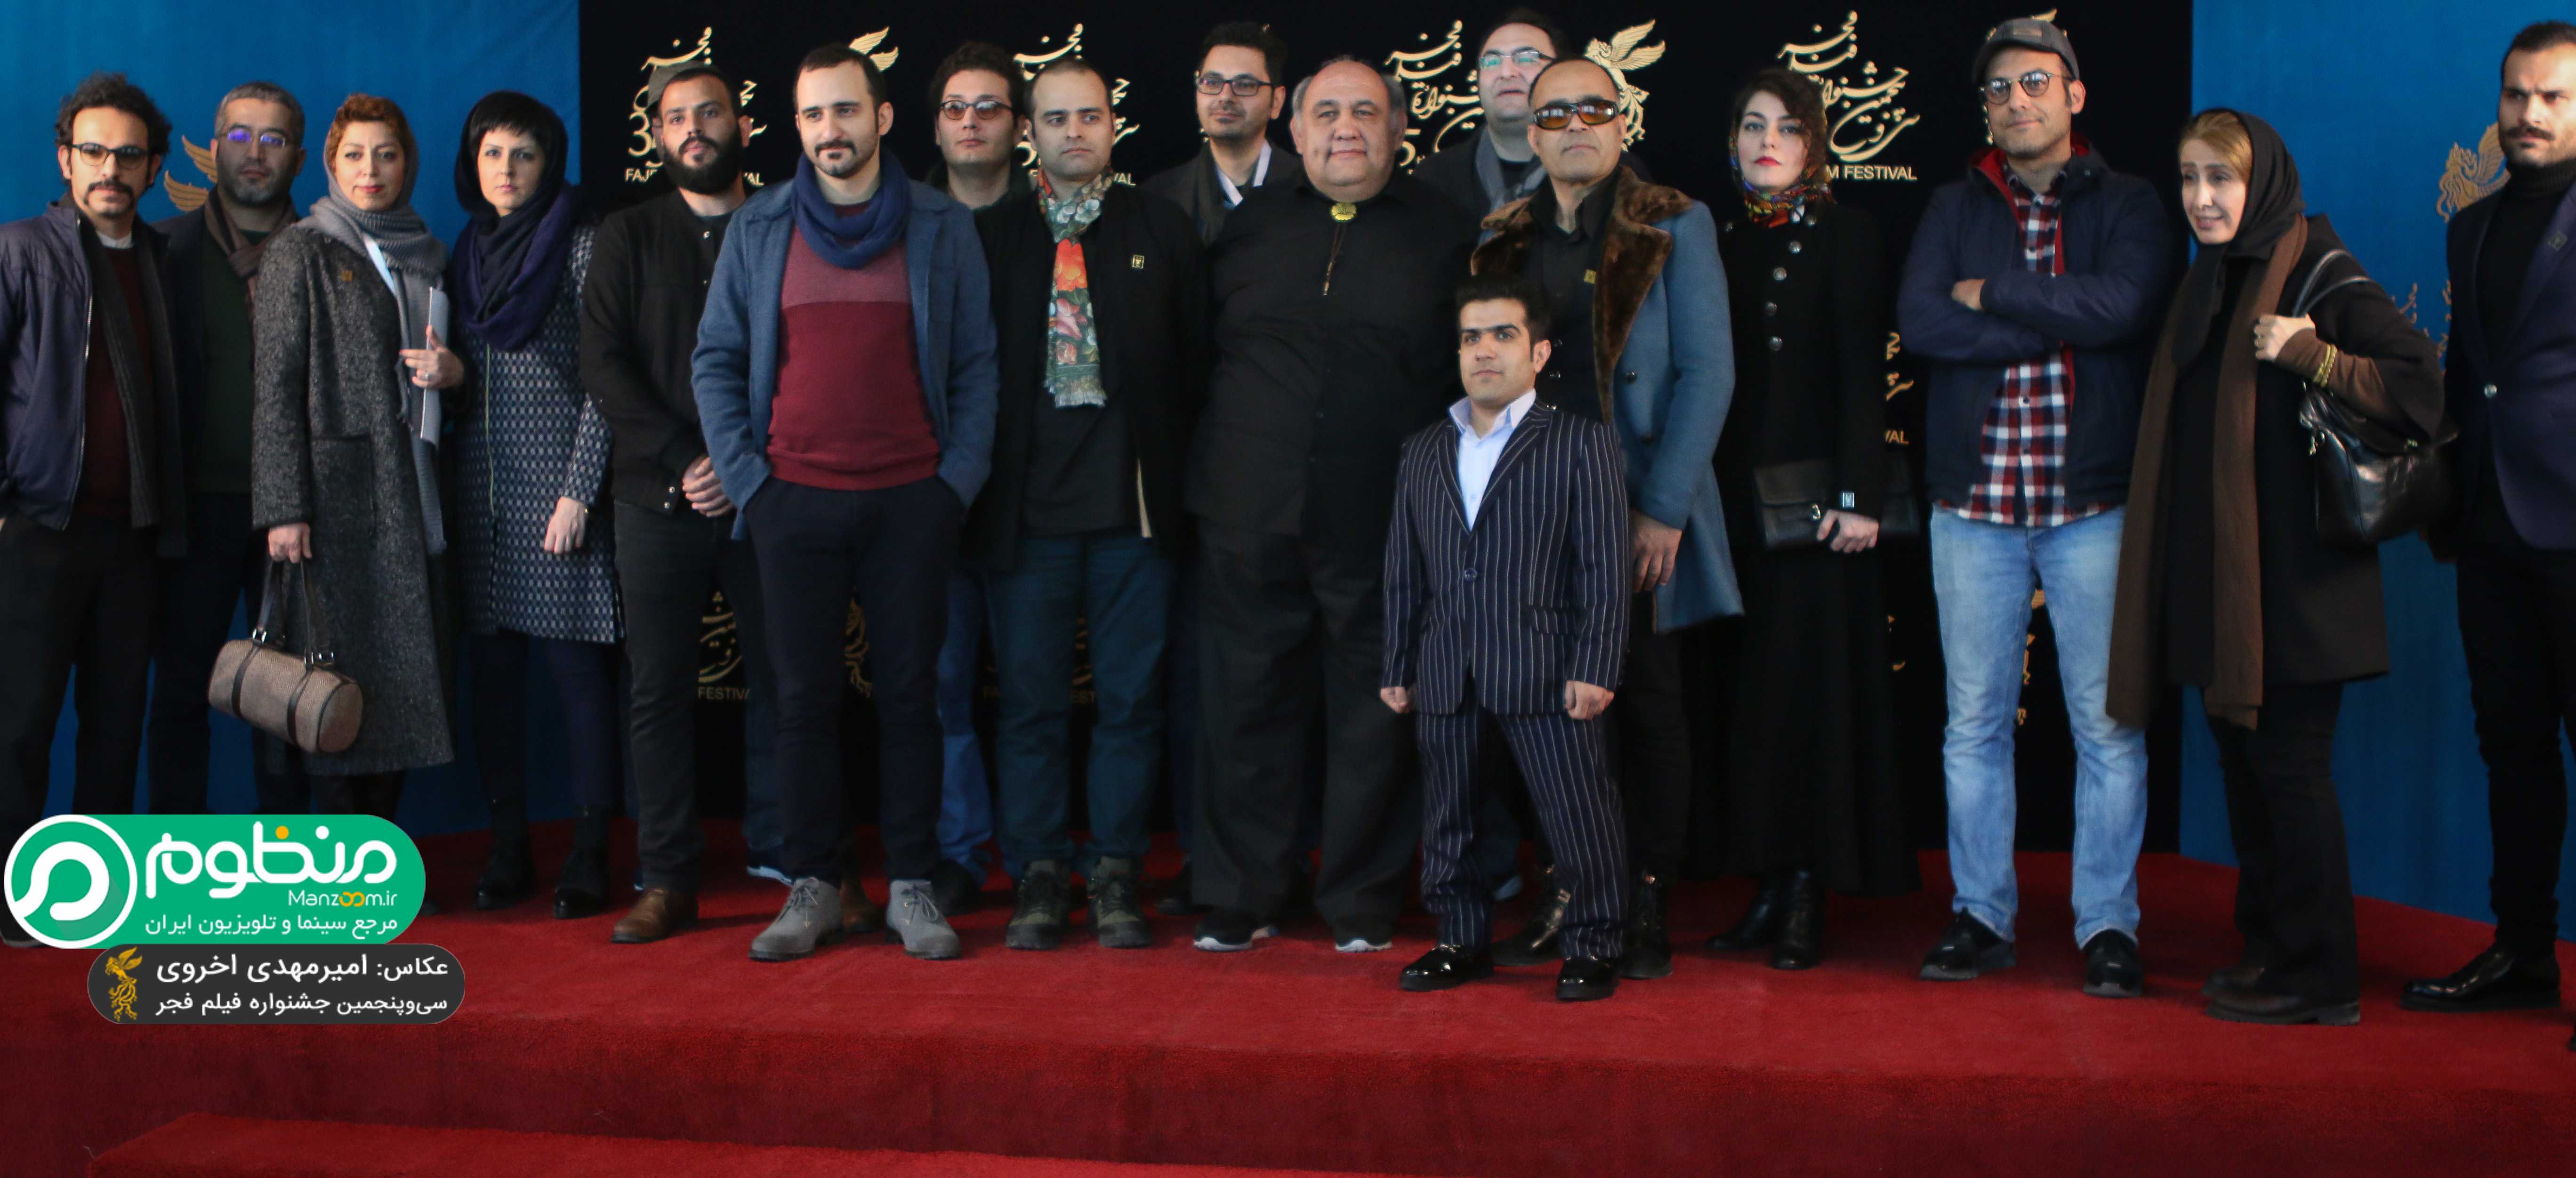 لوون هفتوان در فرش قرمز فیلم سینمایی کوپال به همراه کاظم ملایی، پوریا رحیمی‌سام و نازنین فراهانی